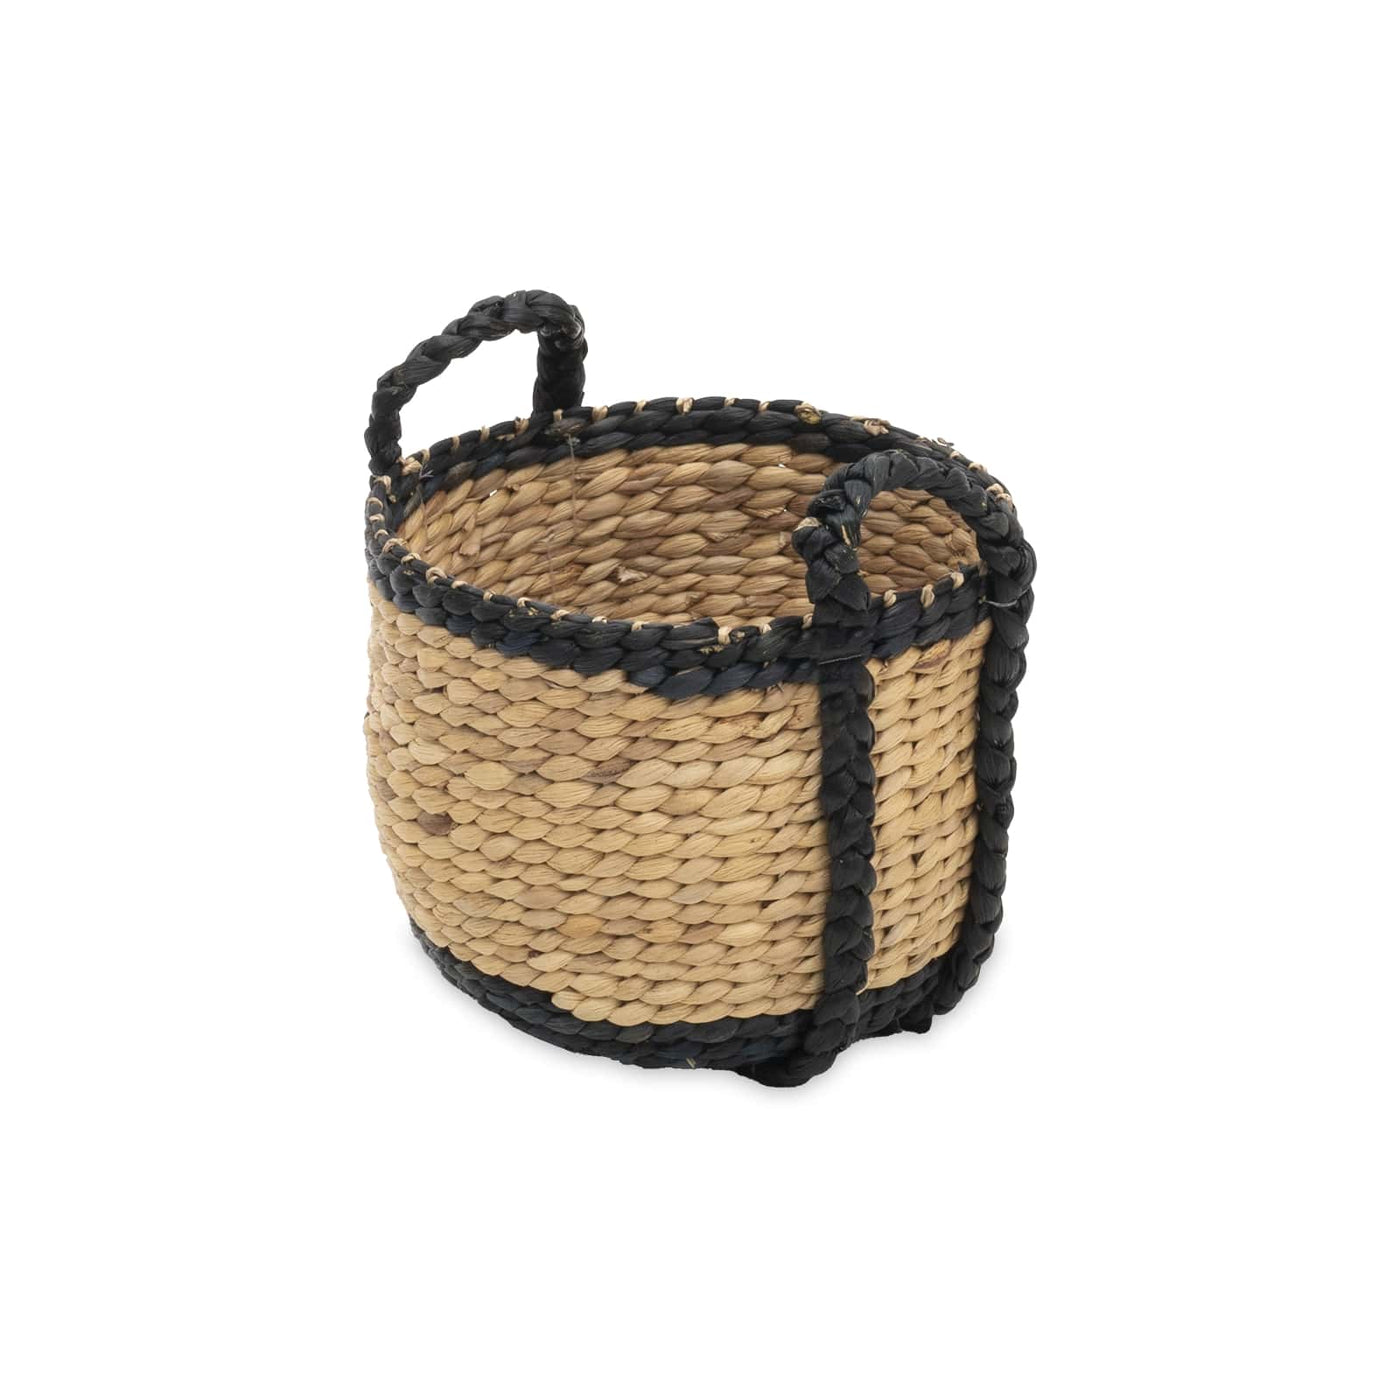 Elizabeth Water Hyacinth Basket, Natural, S Baskets sazy.com